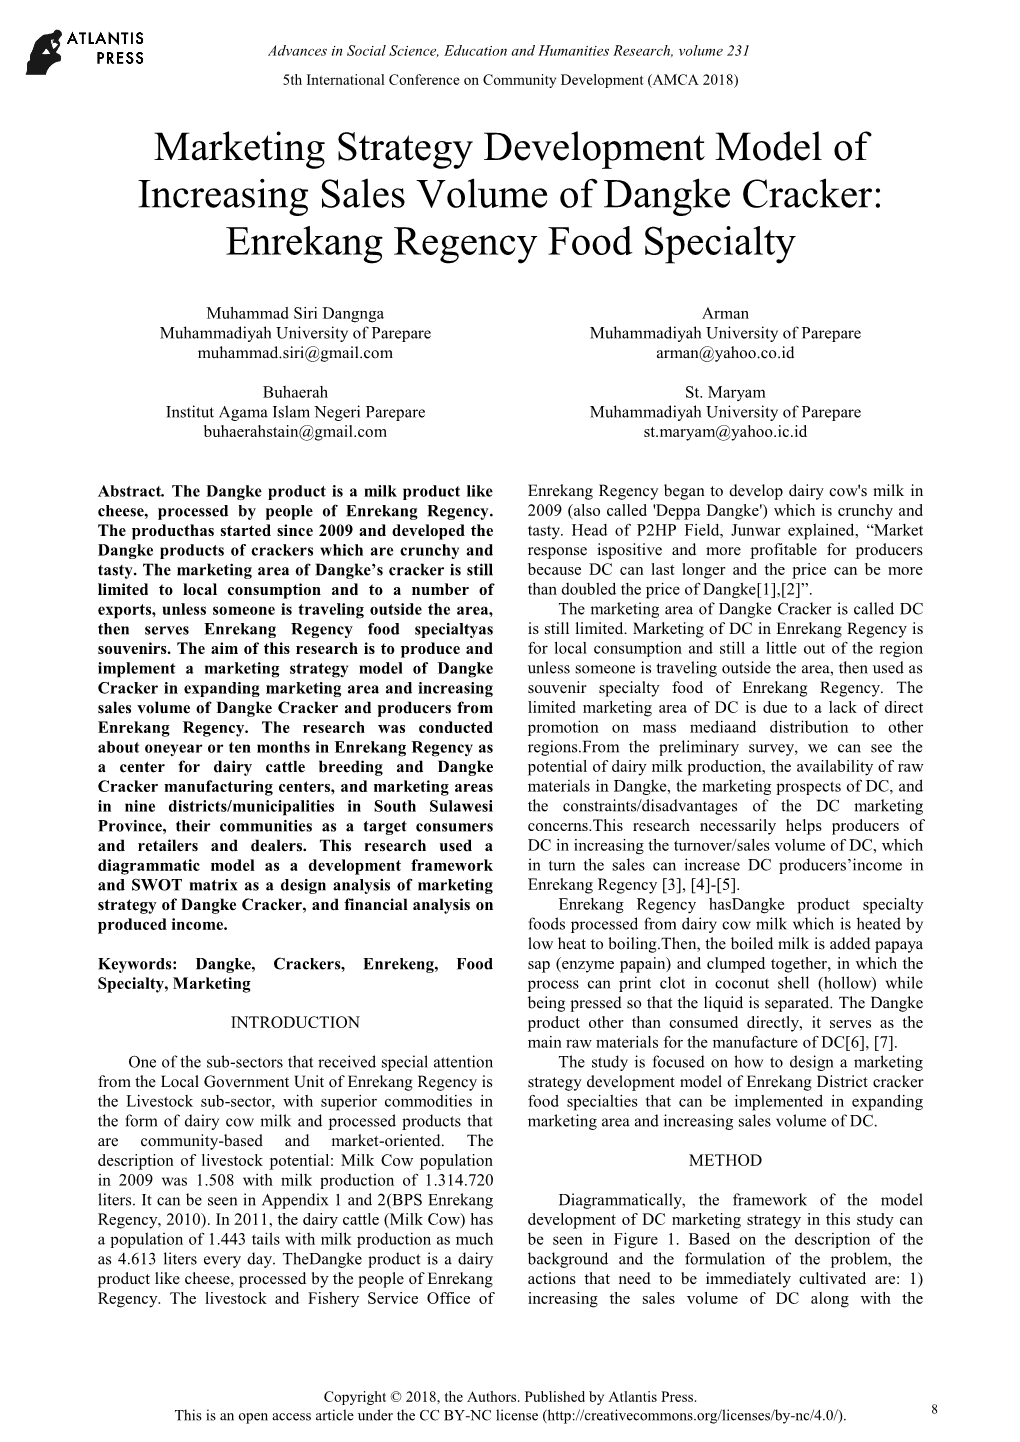 Marketing Strategy Development Model of Increasing Sales Volume of Dangke Cracker: Enrekang Regency Food Specialty